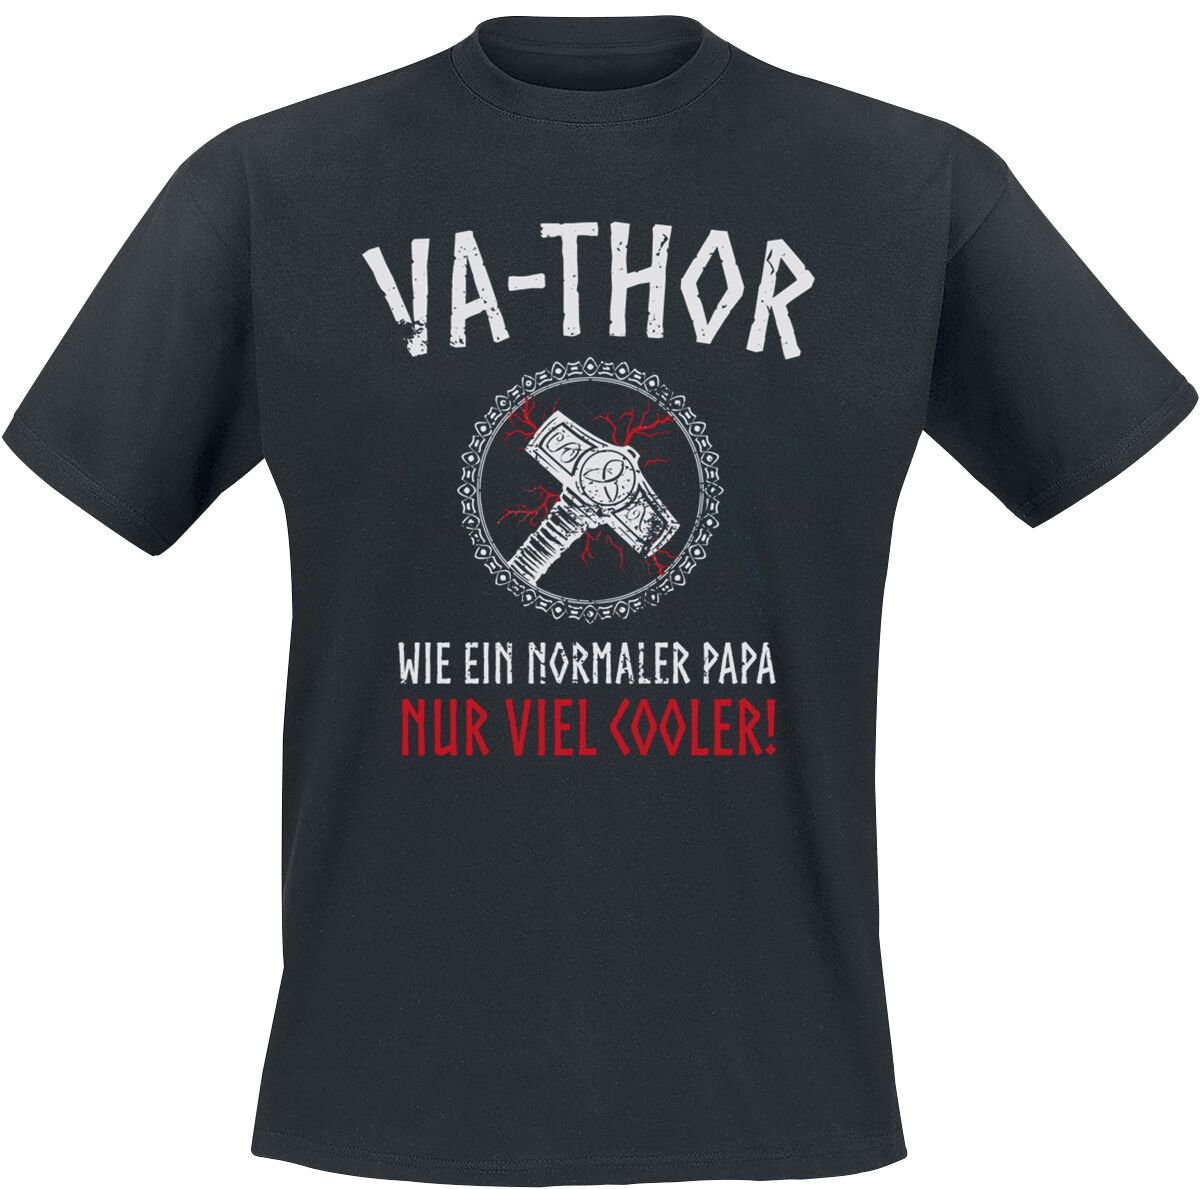 Familie & Freunde T-Shirt - Va-Thor - S bis 4XL - für Männer - Größe 4XL - schwarz